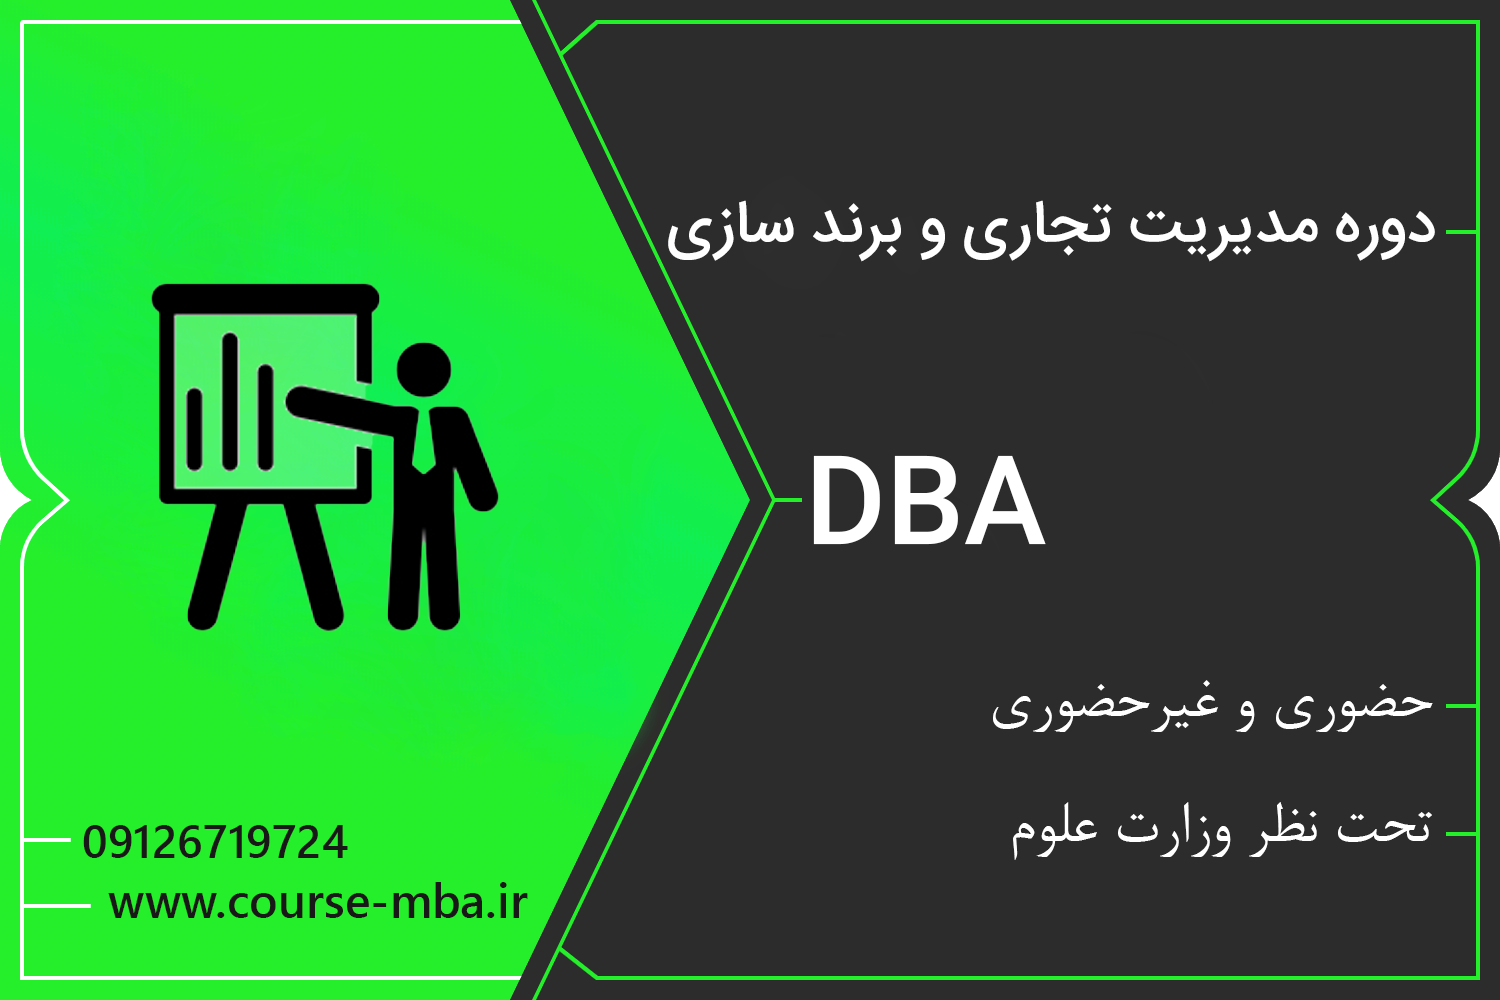 دوره DBA مدیریت تجاری و برندسازی | مدرک DBA مدیریت تجاری و برندسازی